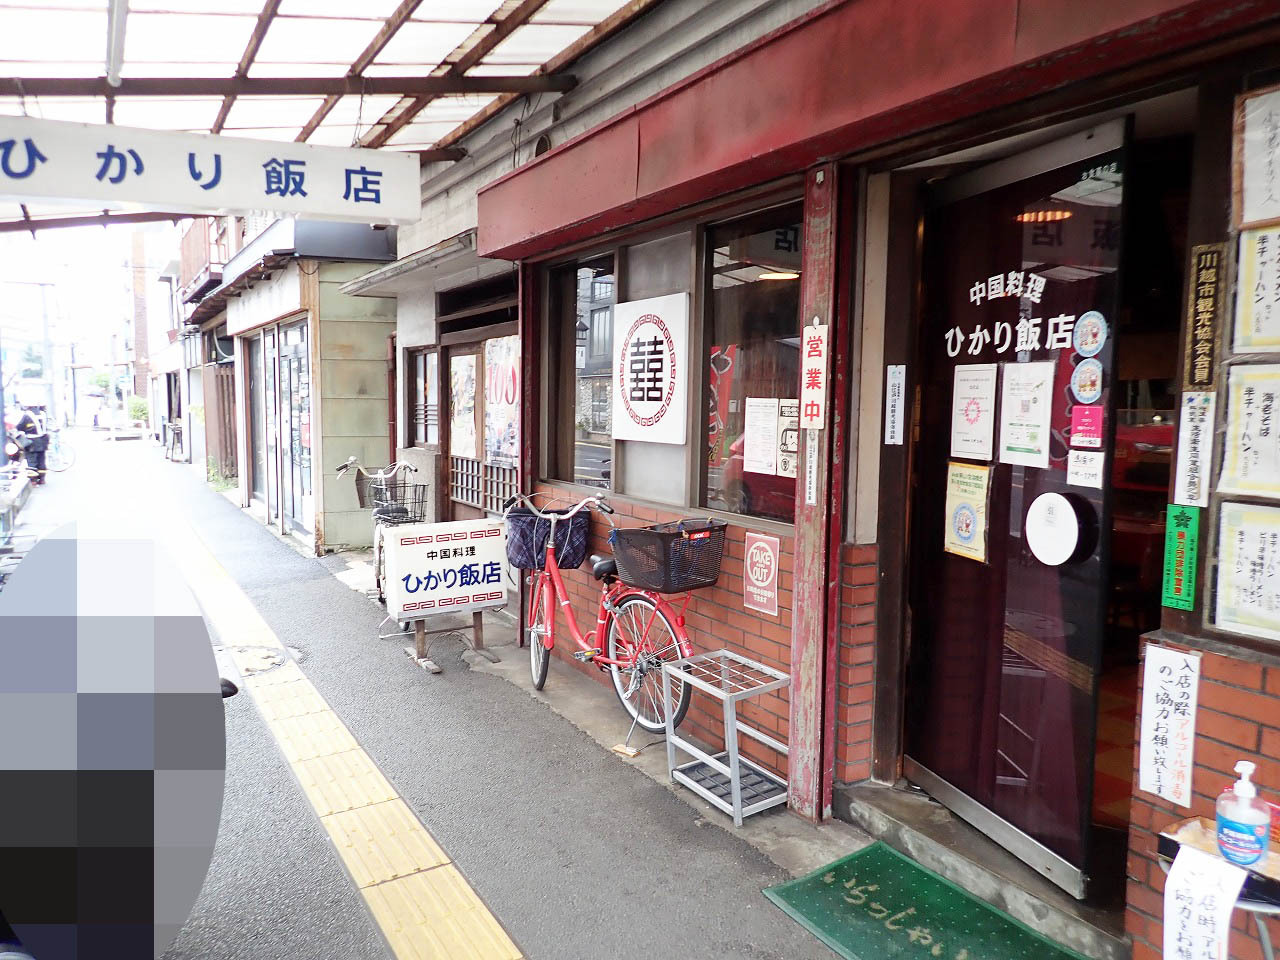 お店は西武新宿線・本川越駅から徒歩約6分のところにあります